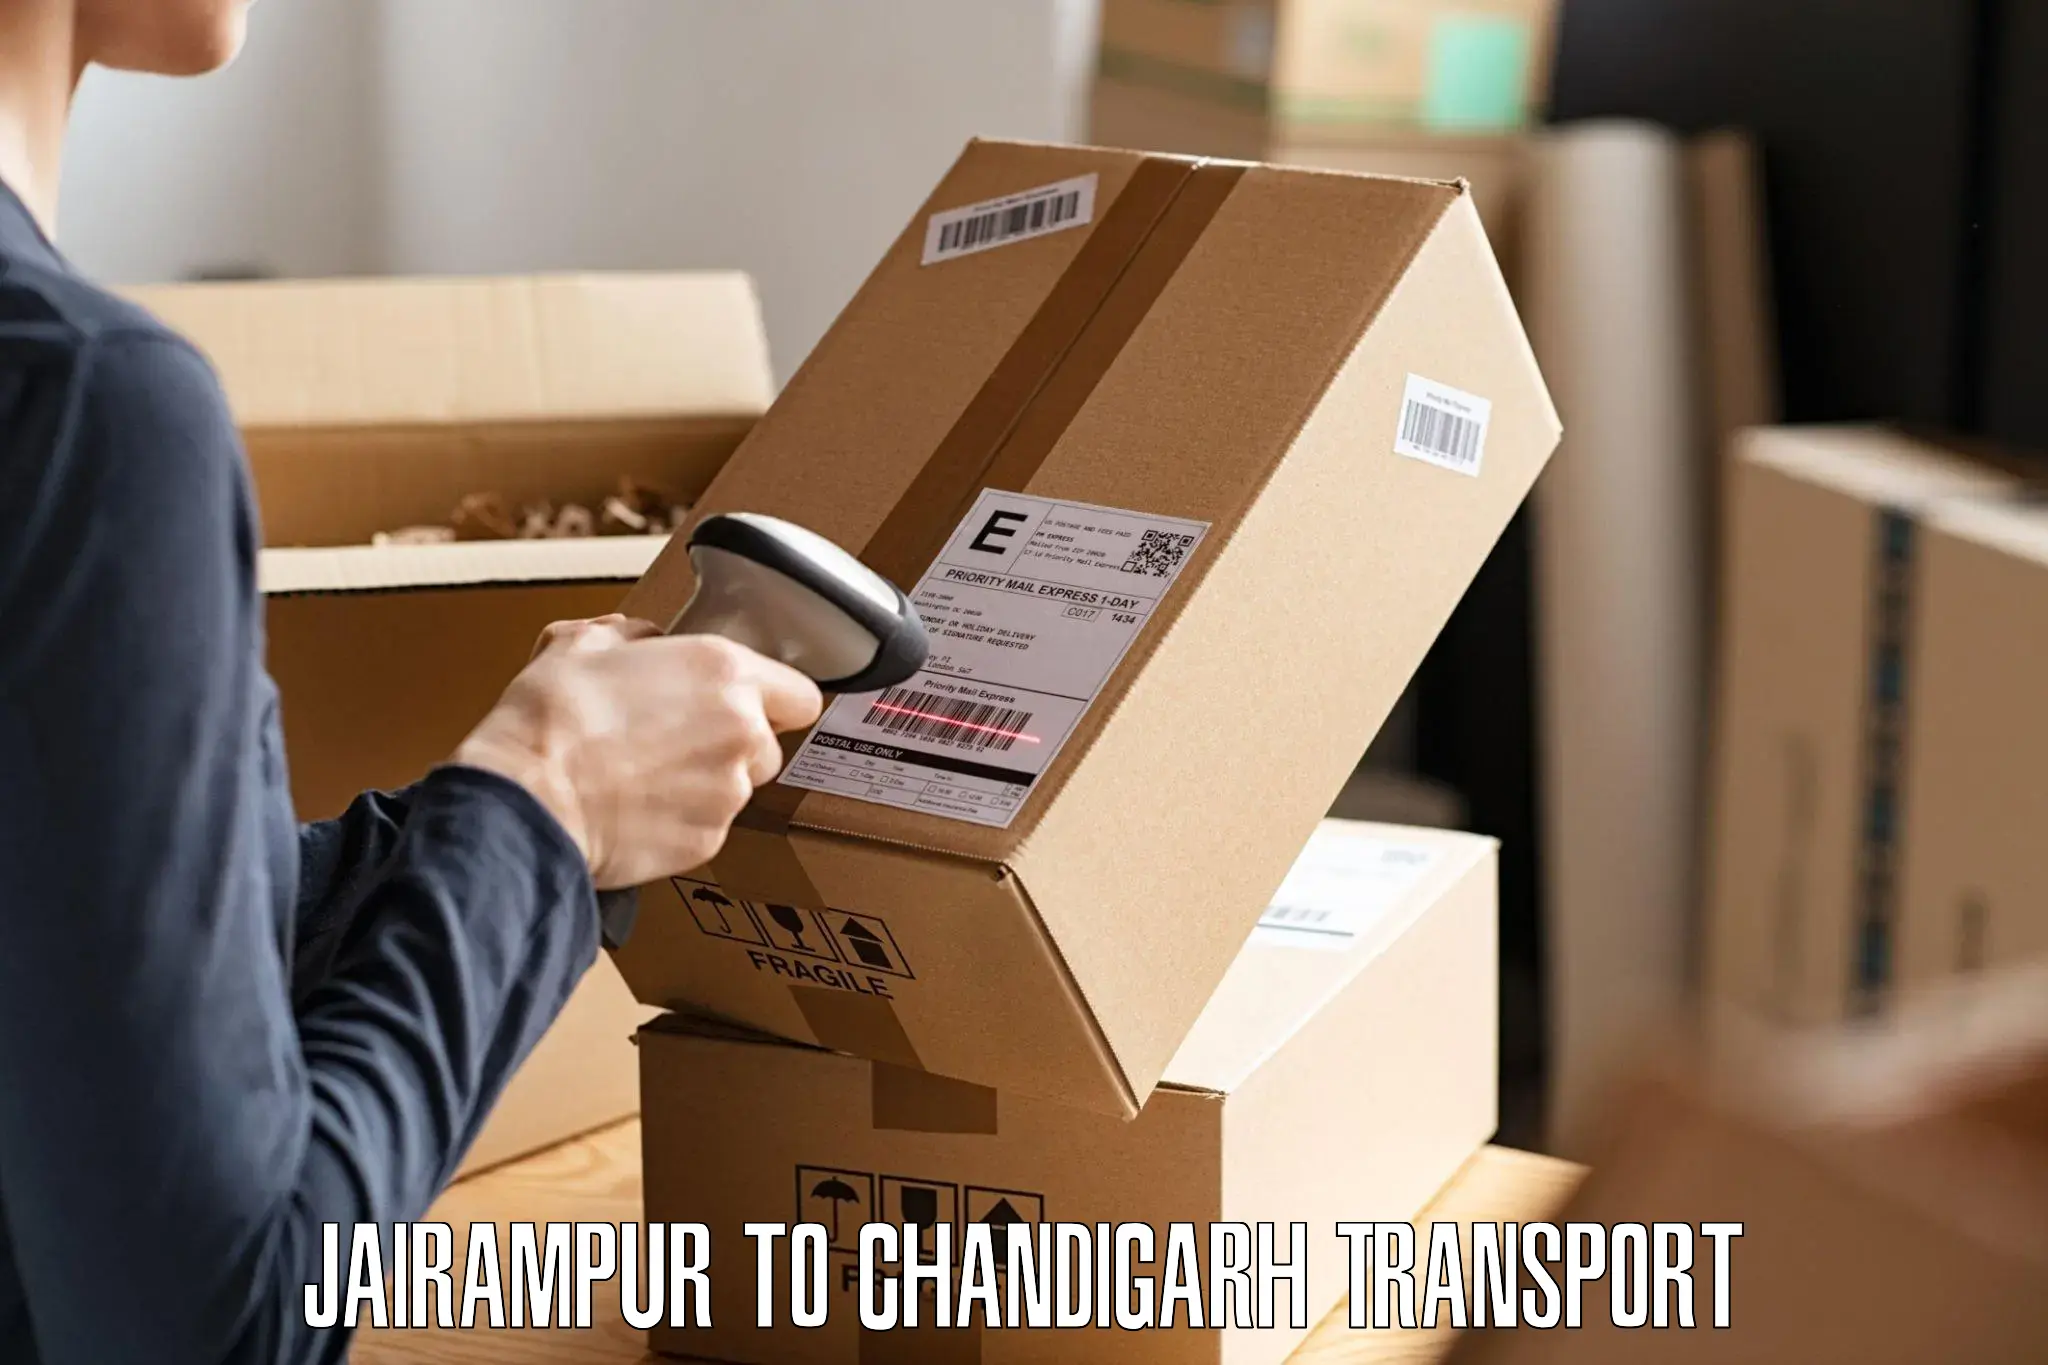 Nearest transport service Jairampur to Chandigarh